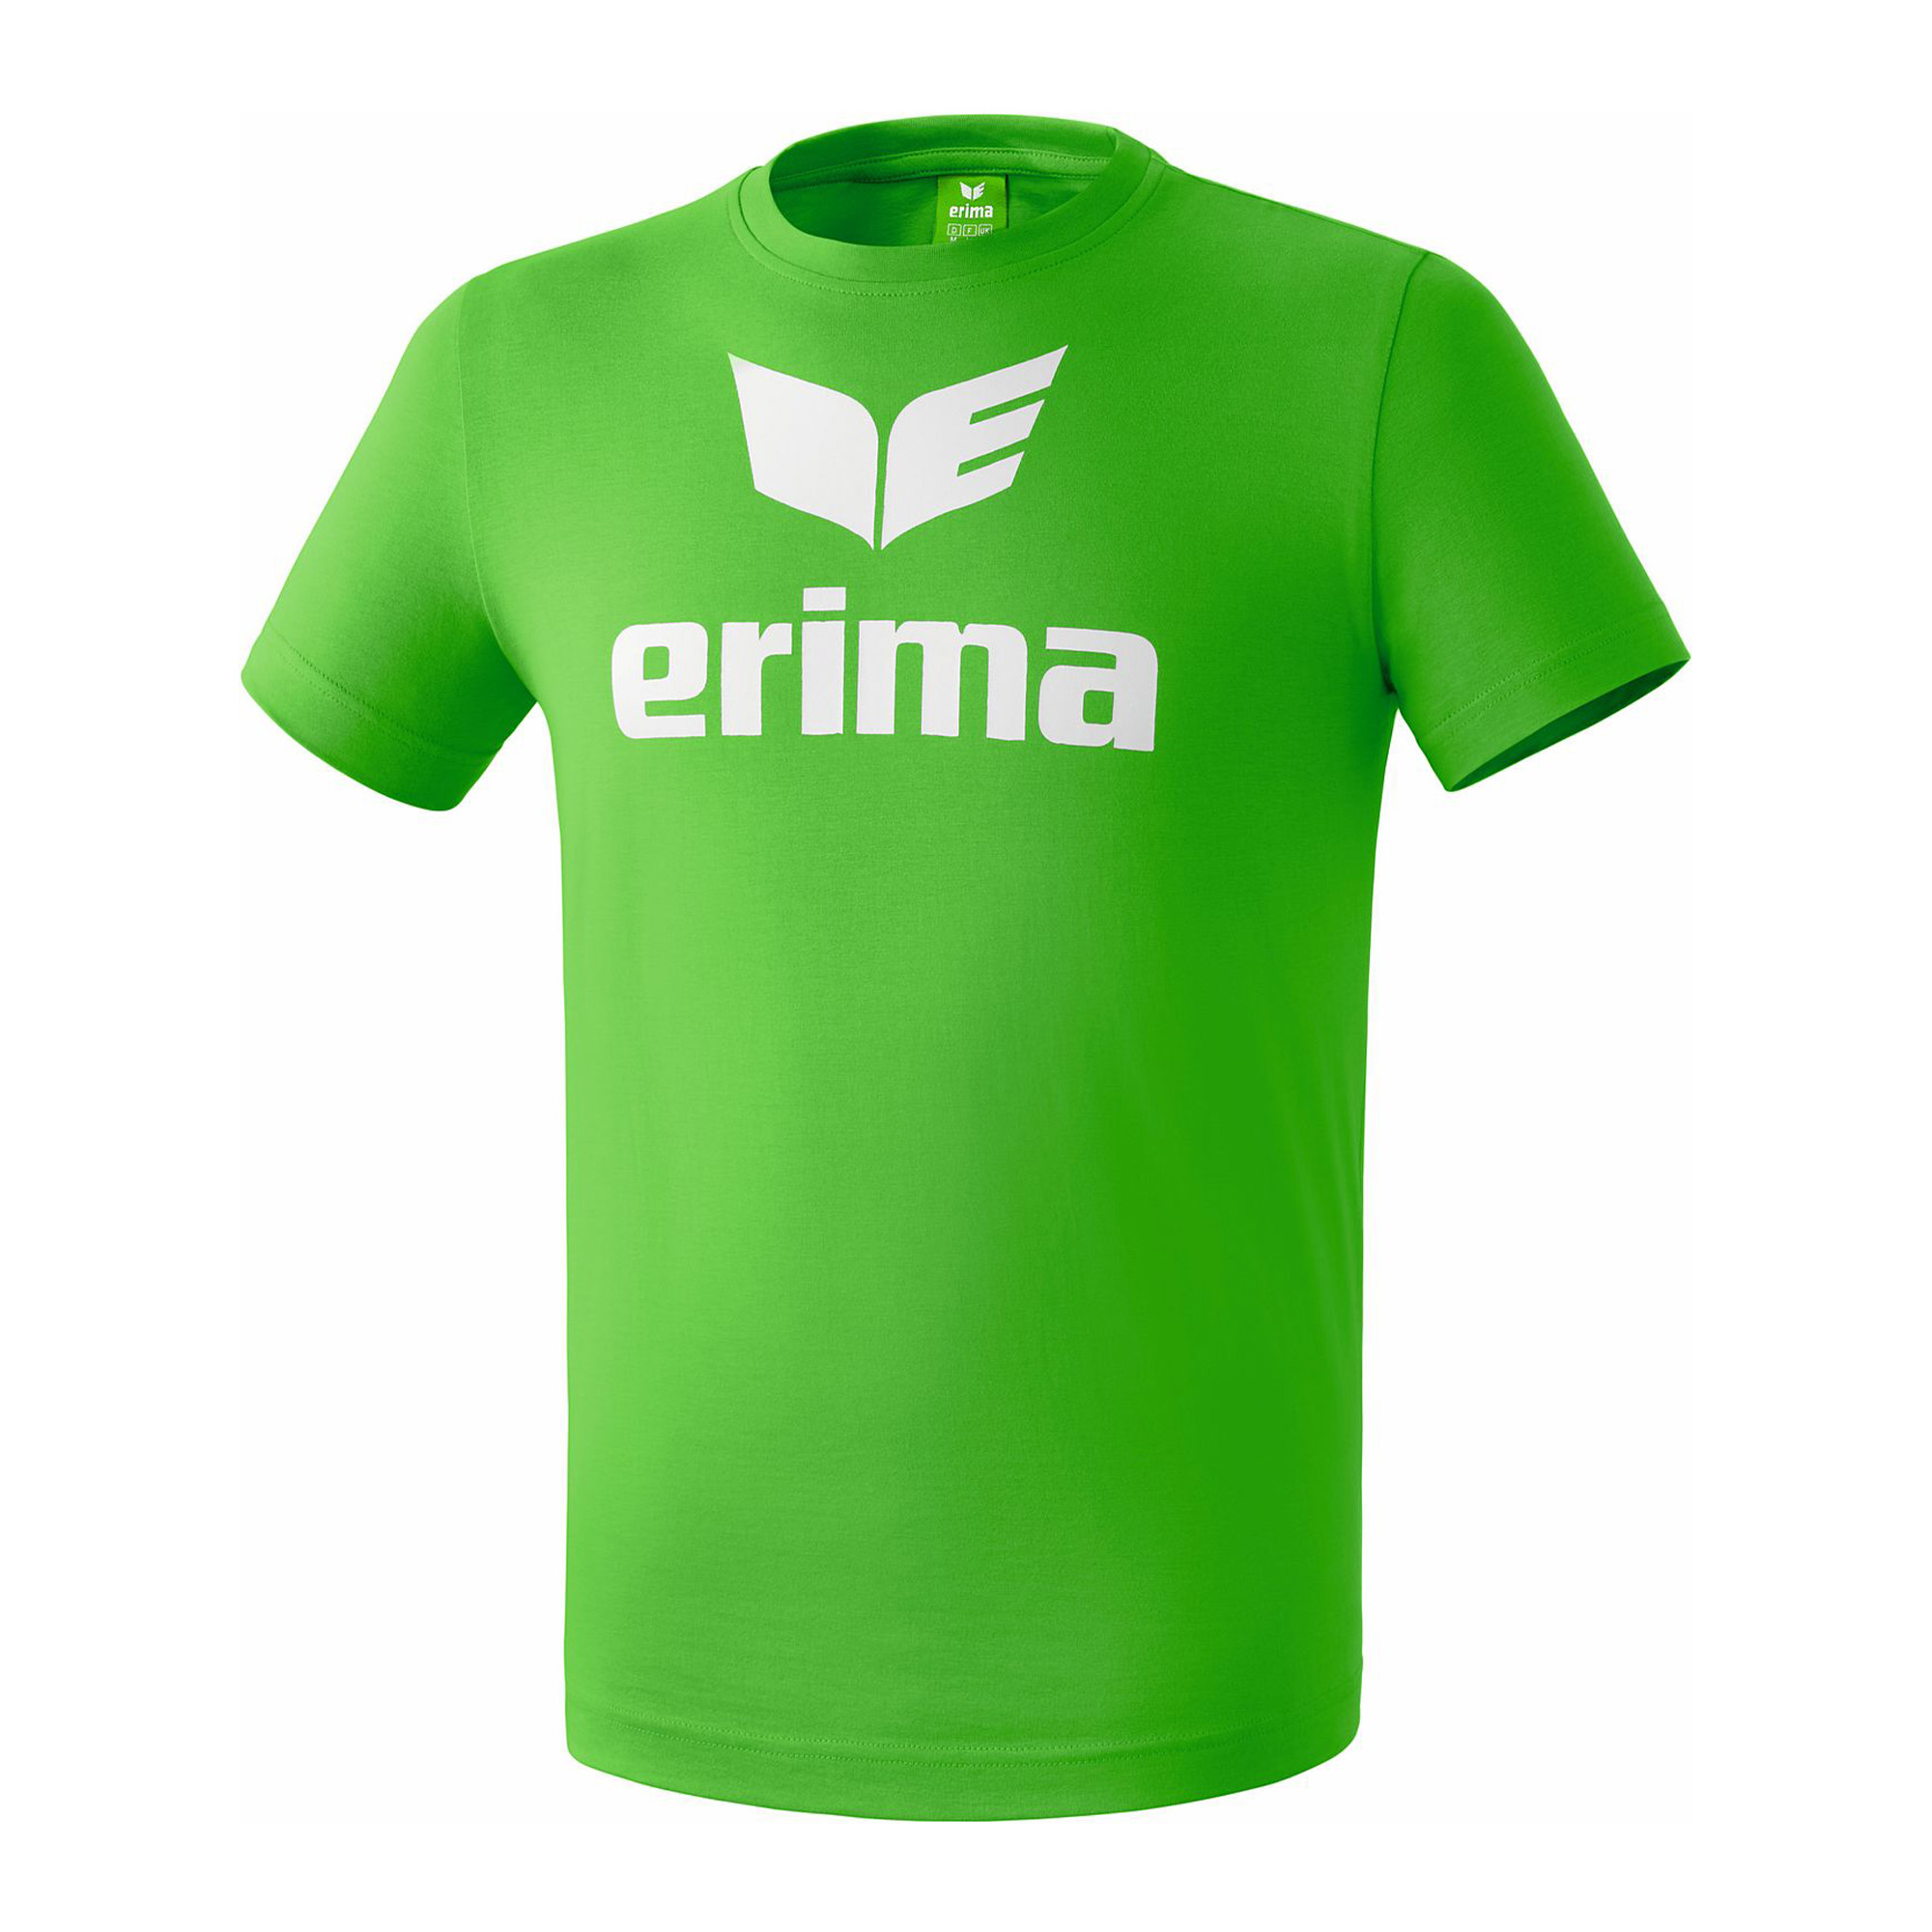 Erima Promo Póló zöld